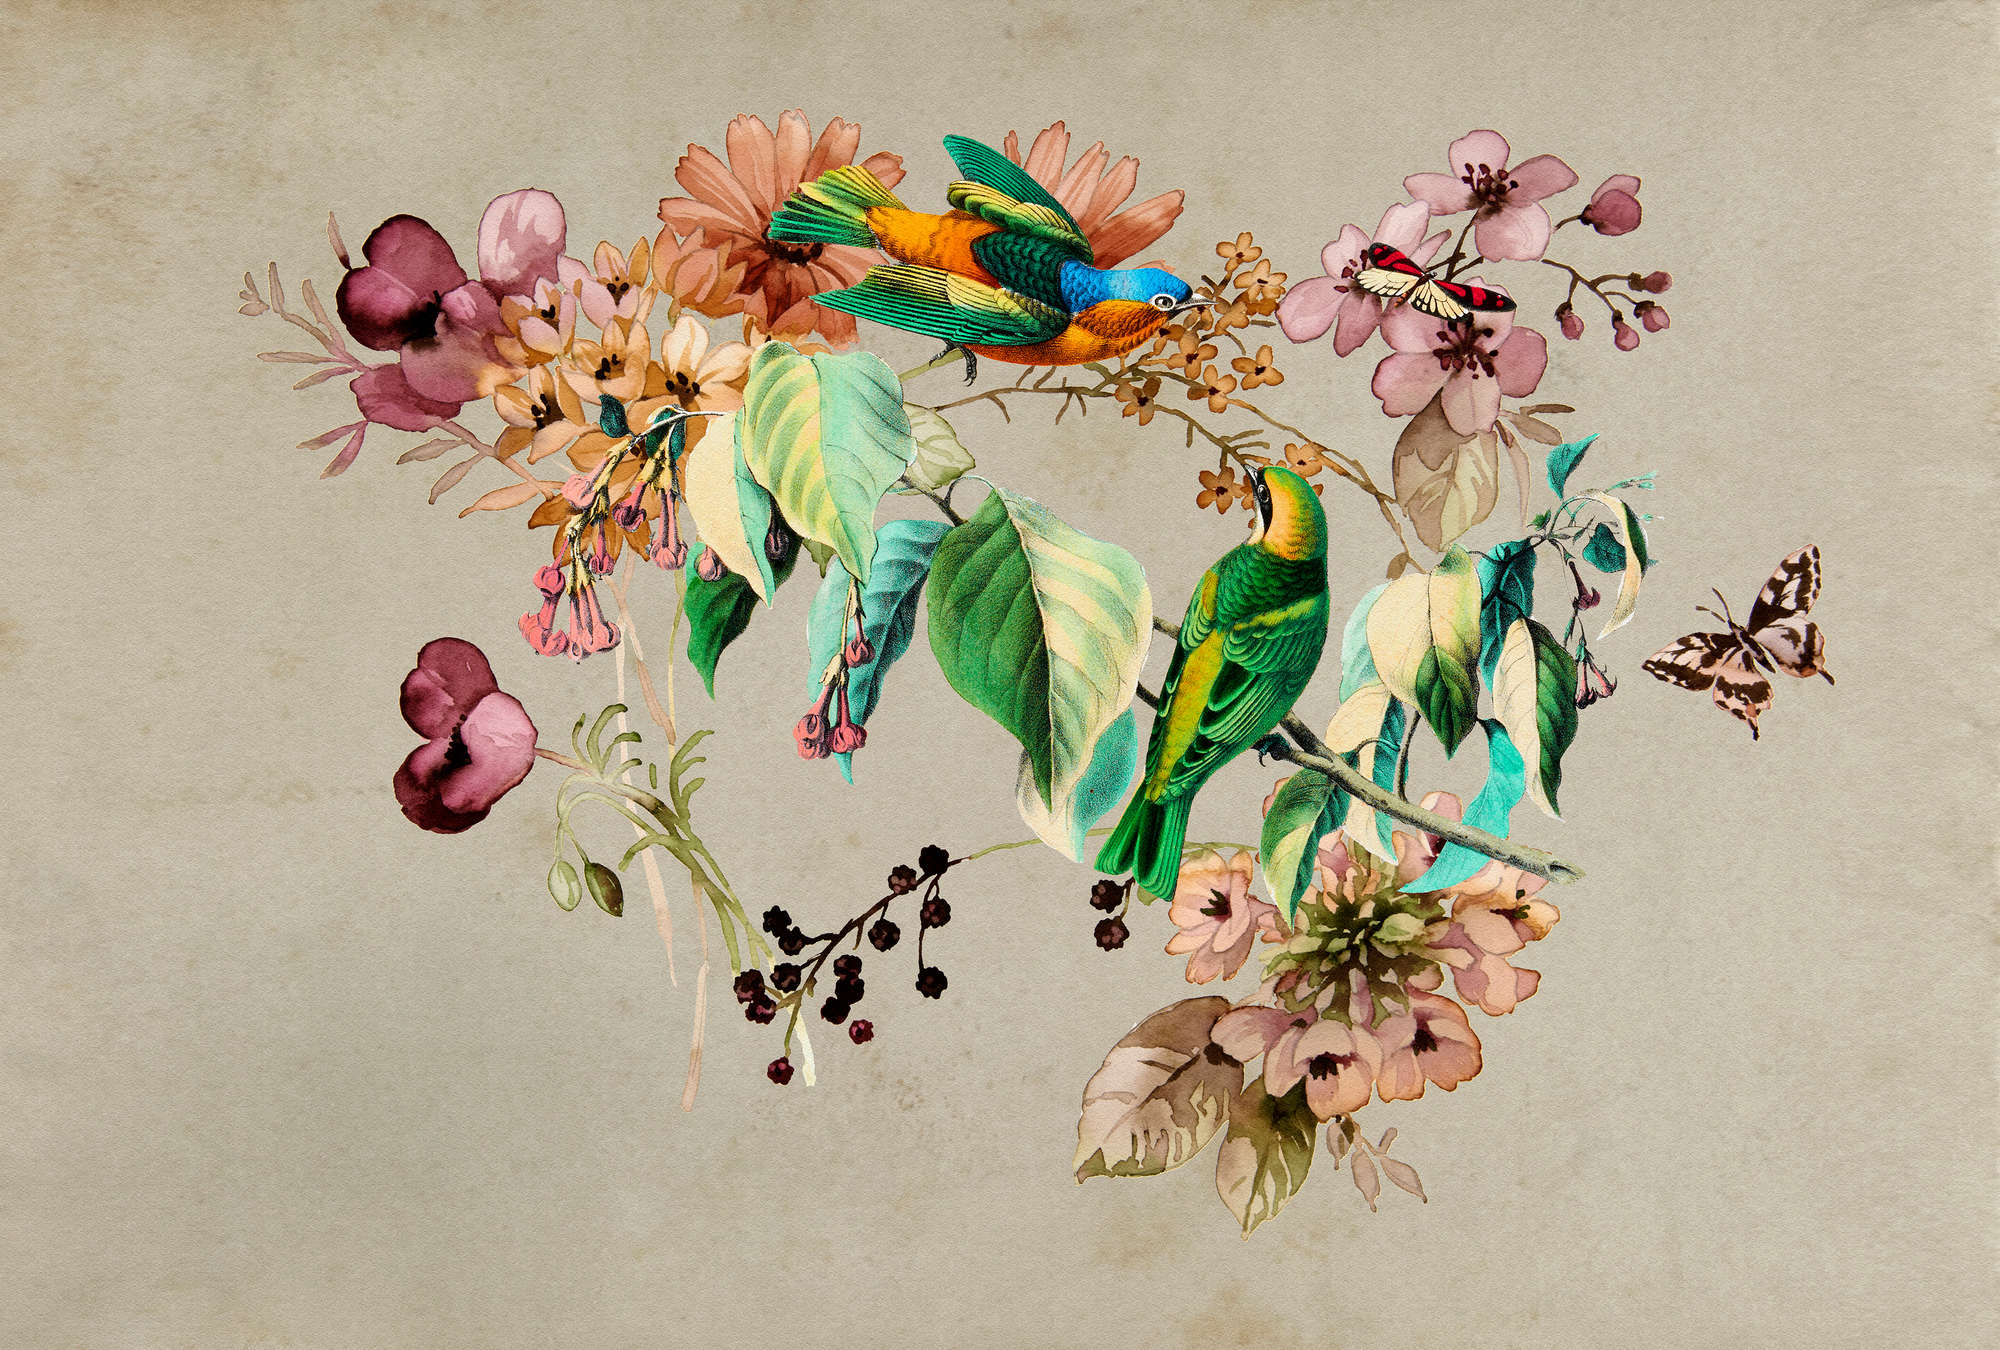             Love Nest 1 - Muurschildering met aquarelbloemen & kleurrijke vogels
        